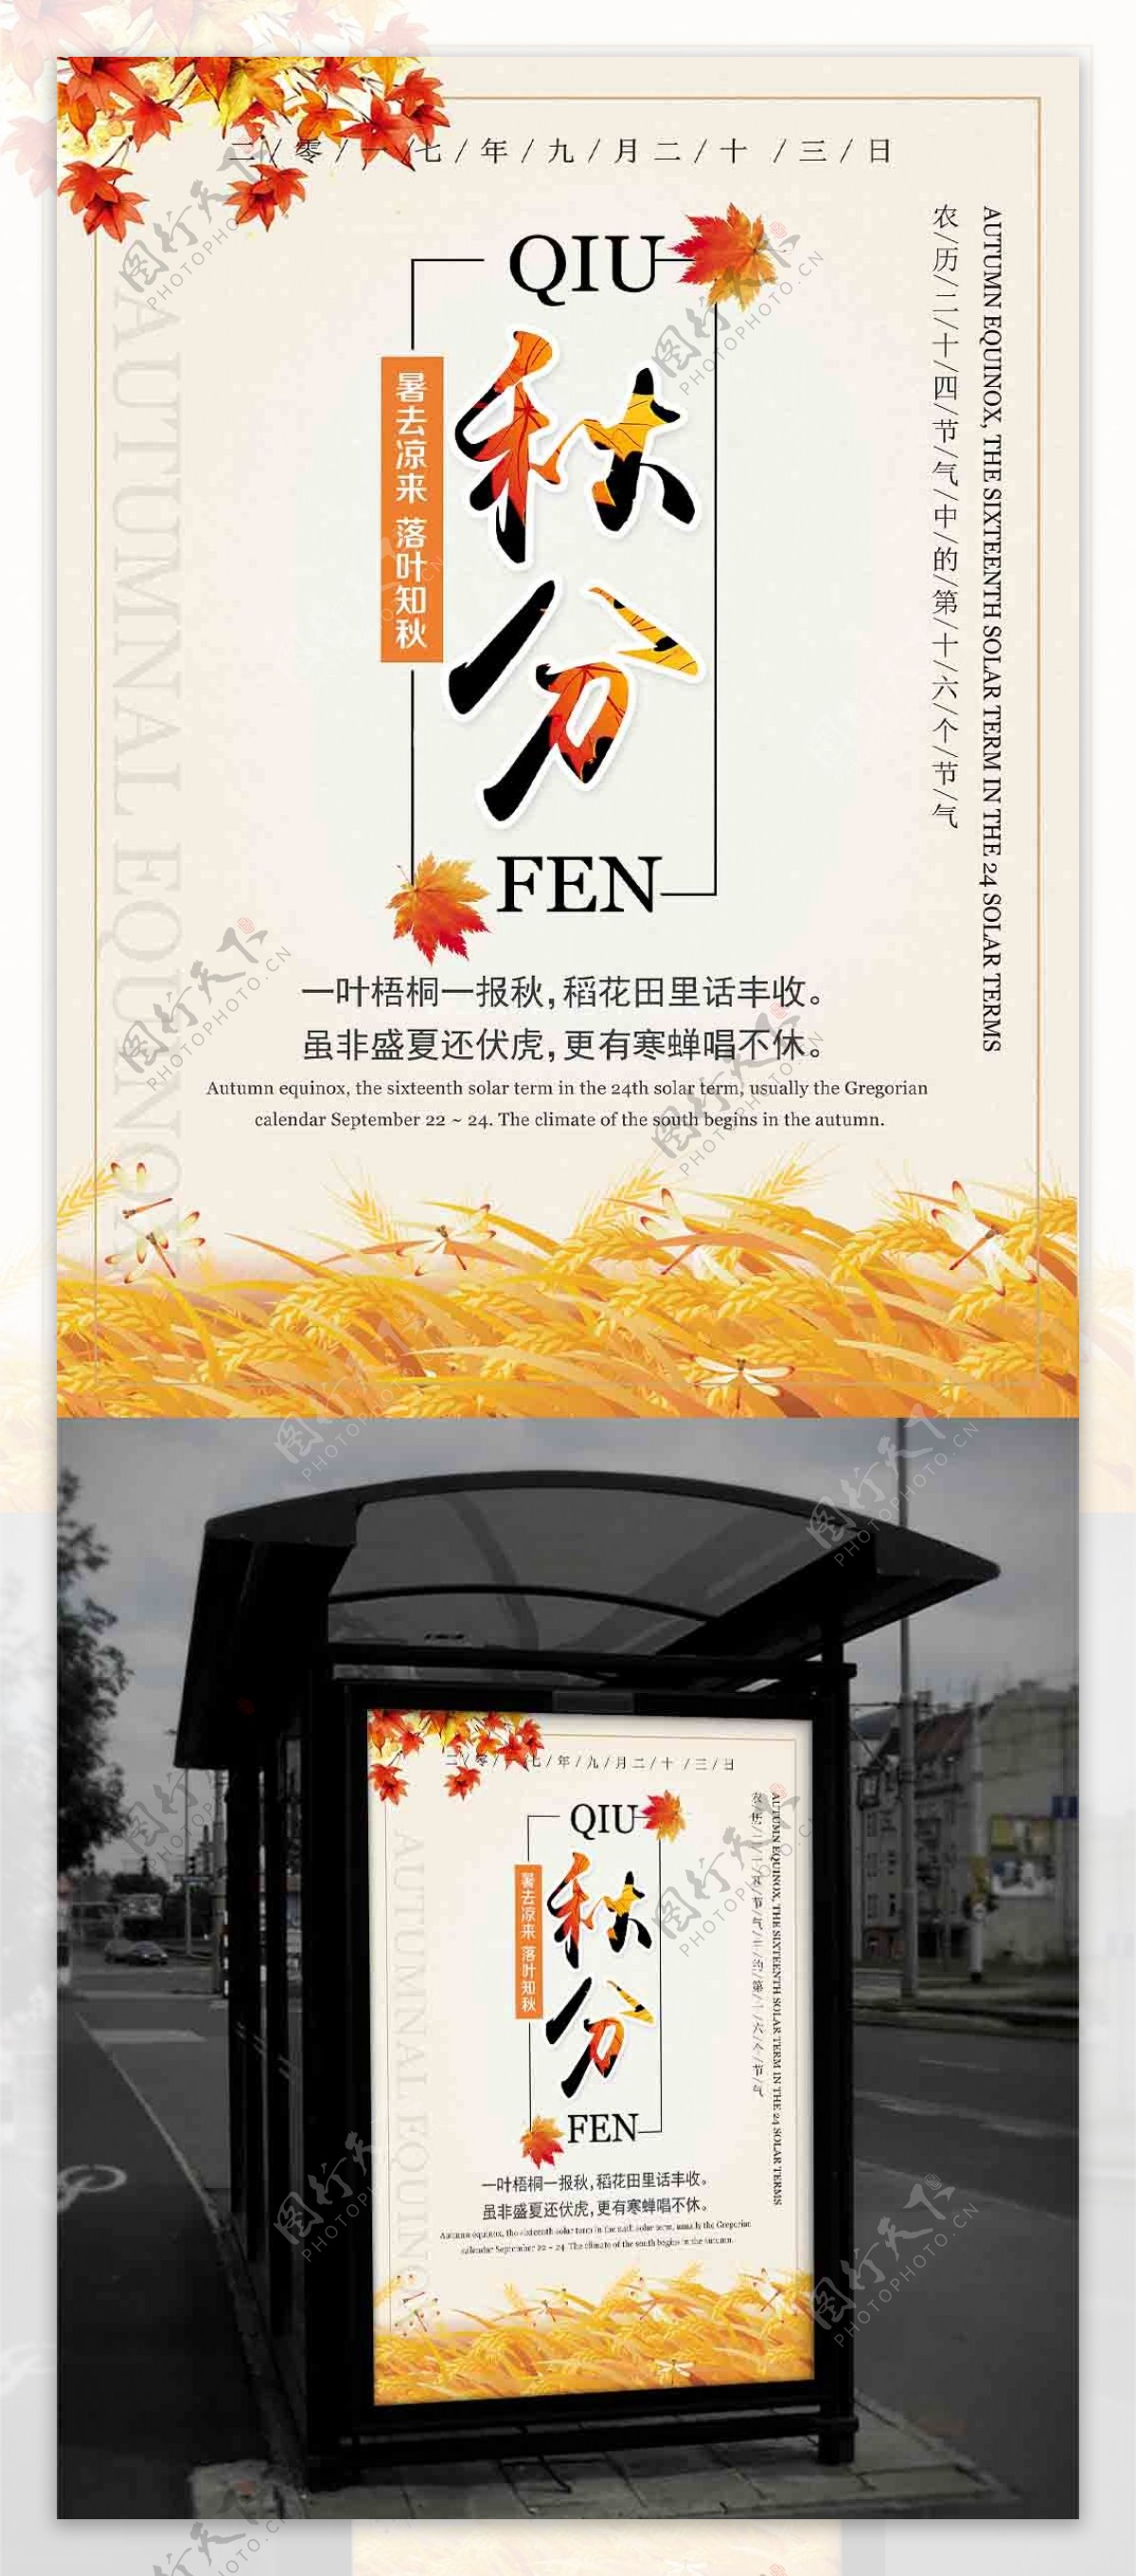 中国传统文化24节气农历秋分时节海报